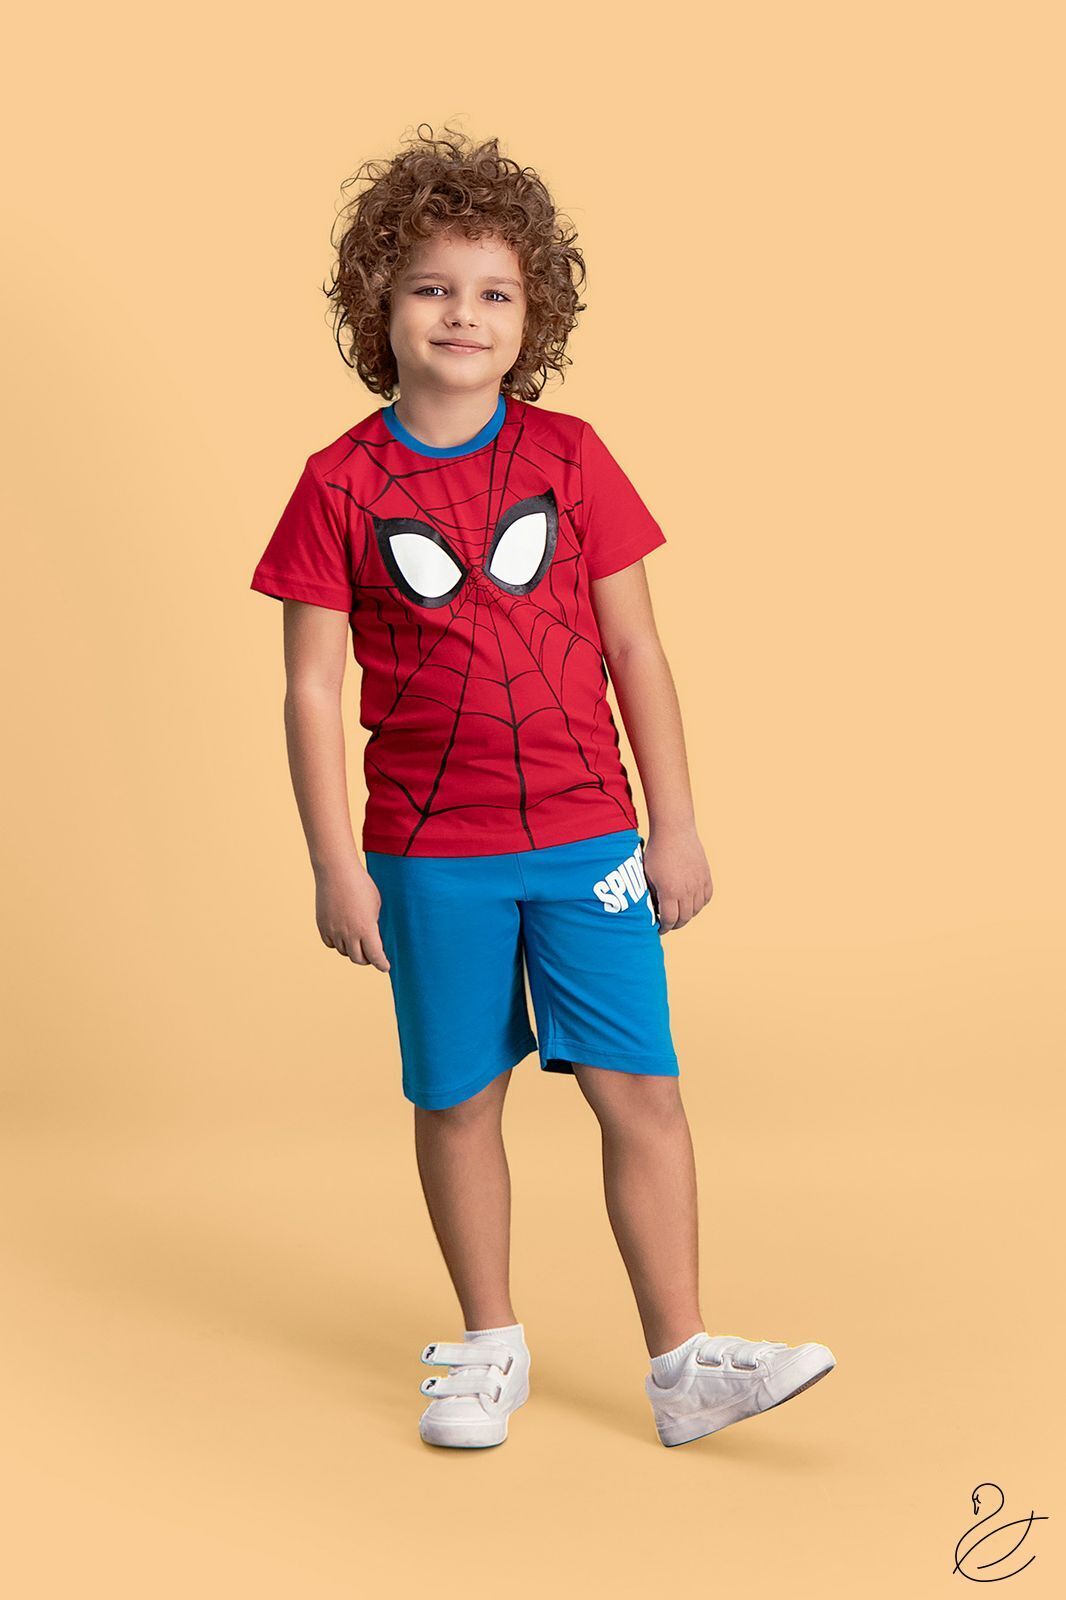 Купить Комплект для мальчика RP Spider-man D4142-6  в Украина в Одежда для дома и отдыха - уют в магазине Lingerie.ua